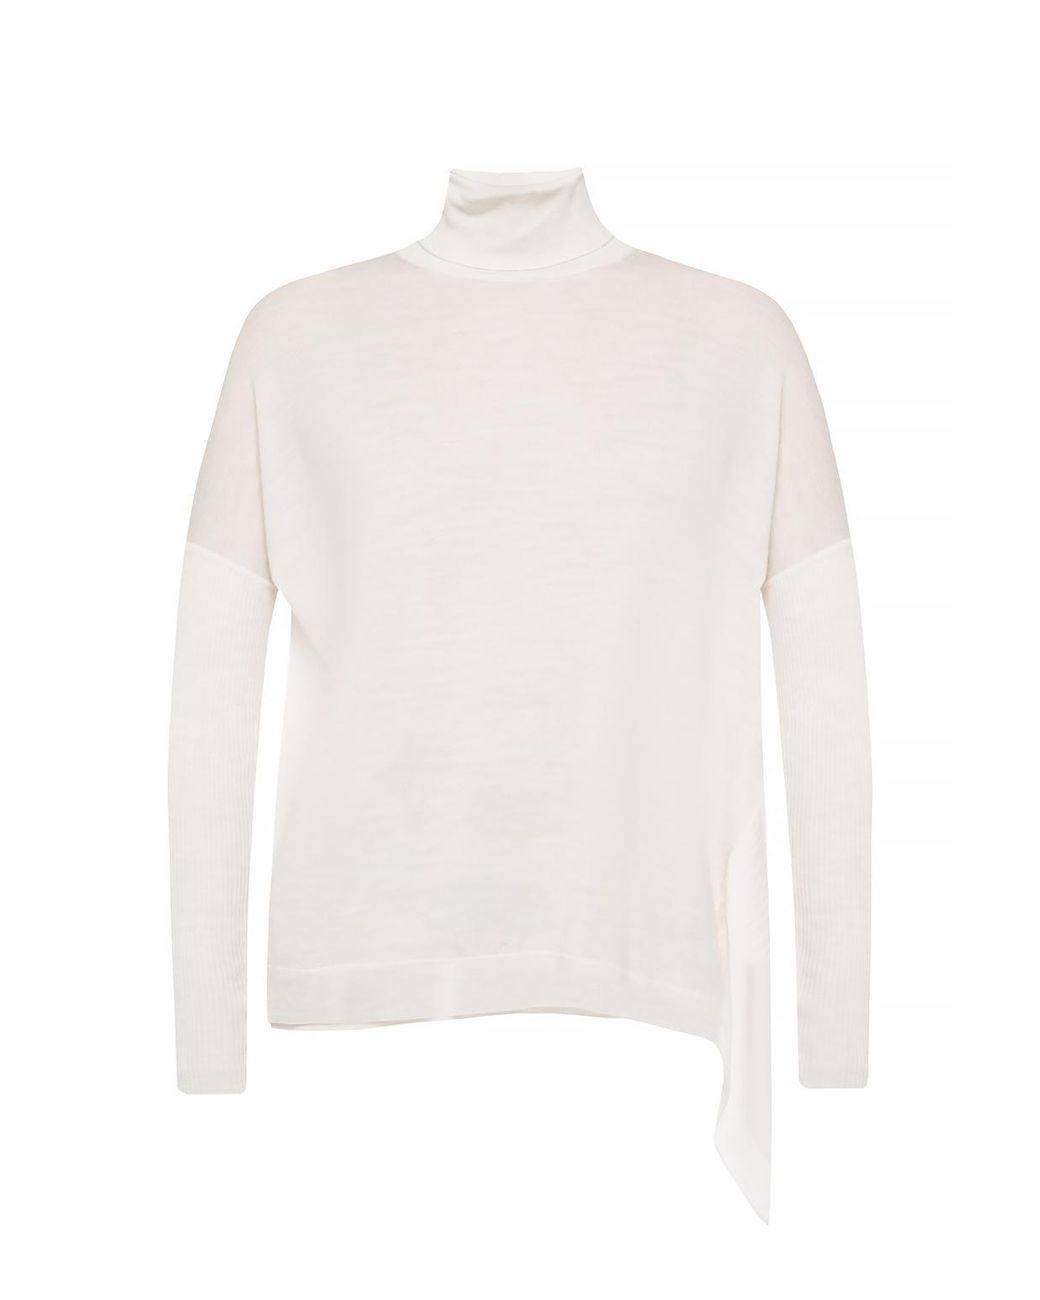 AllSaints Wool 'alda' Asymmetrical Turtleneck Sweater in Black White ...